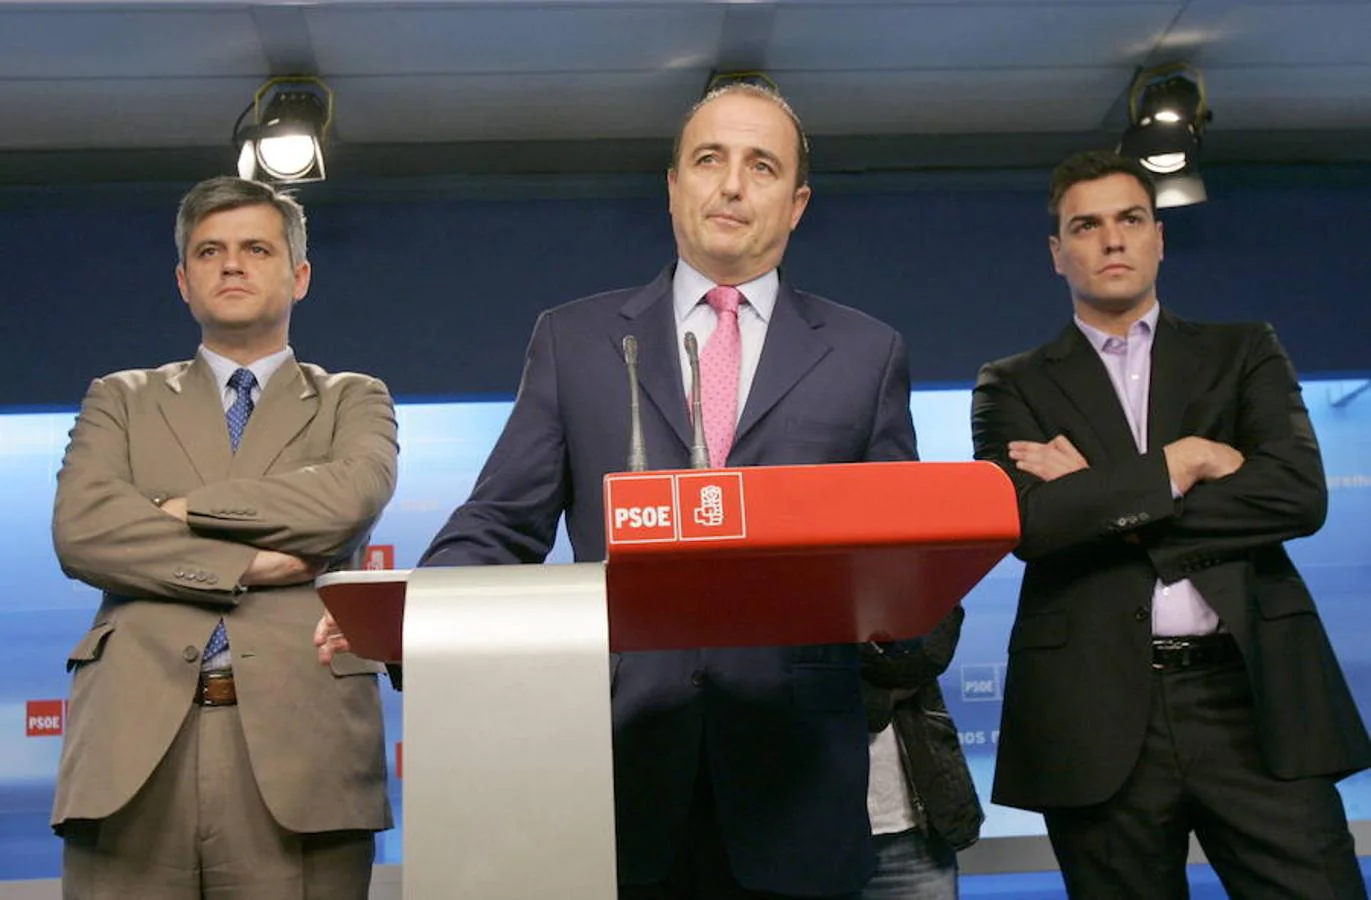 Pedro Sánchez fue concejal en el ayuntamiento de Madrid desde 2004 hasta 2009. En la foto, aparece a la derecha del entonces candidato socialista a la Alcaldía de Madrid, Miguel Sebastián, quien presentaba su renuncia a ser concejal.